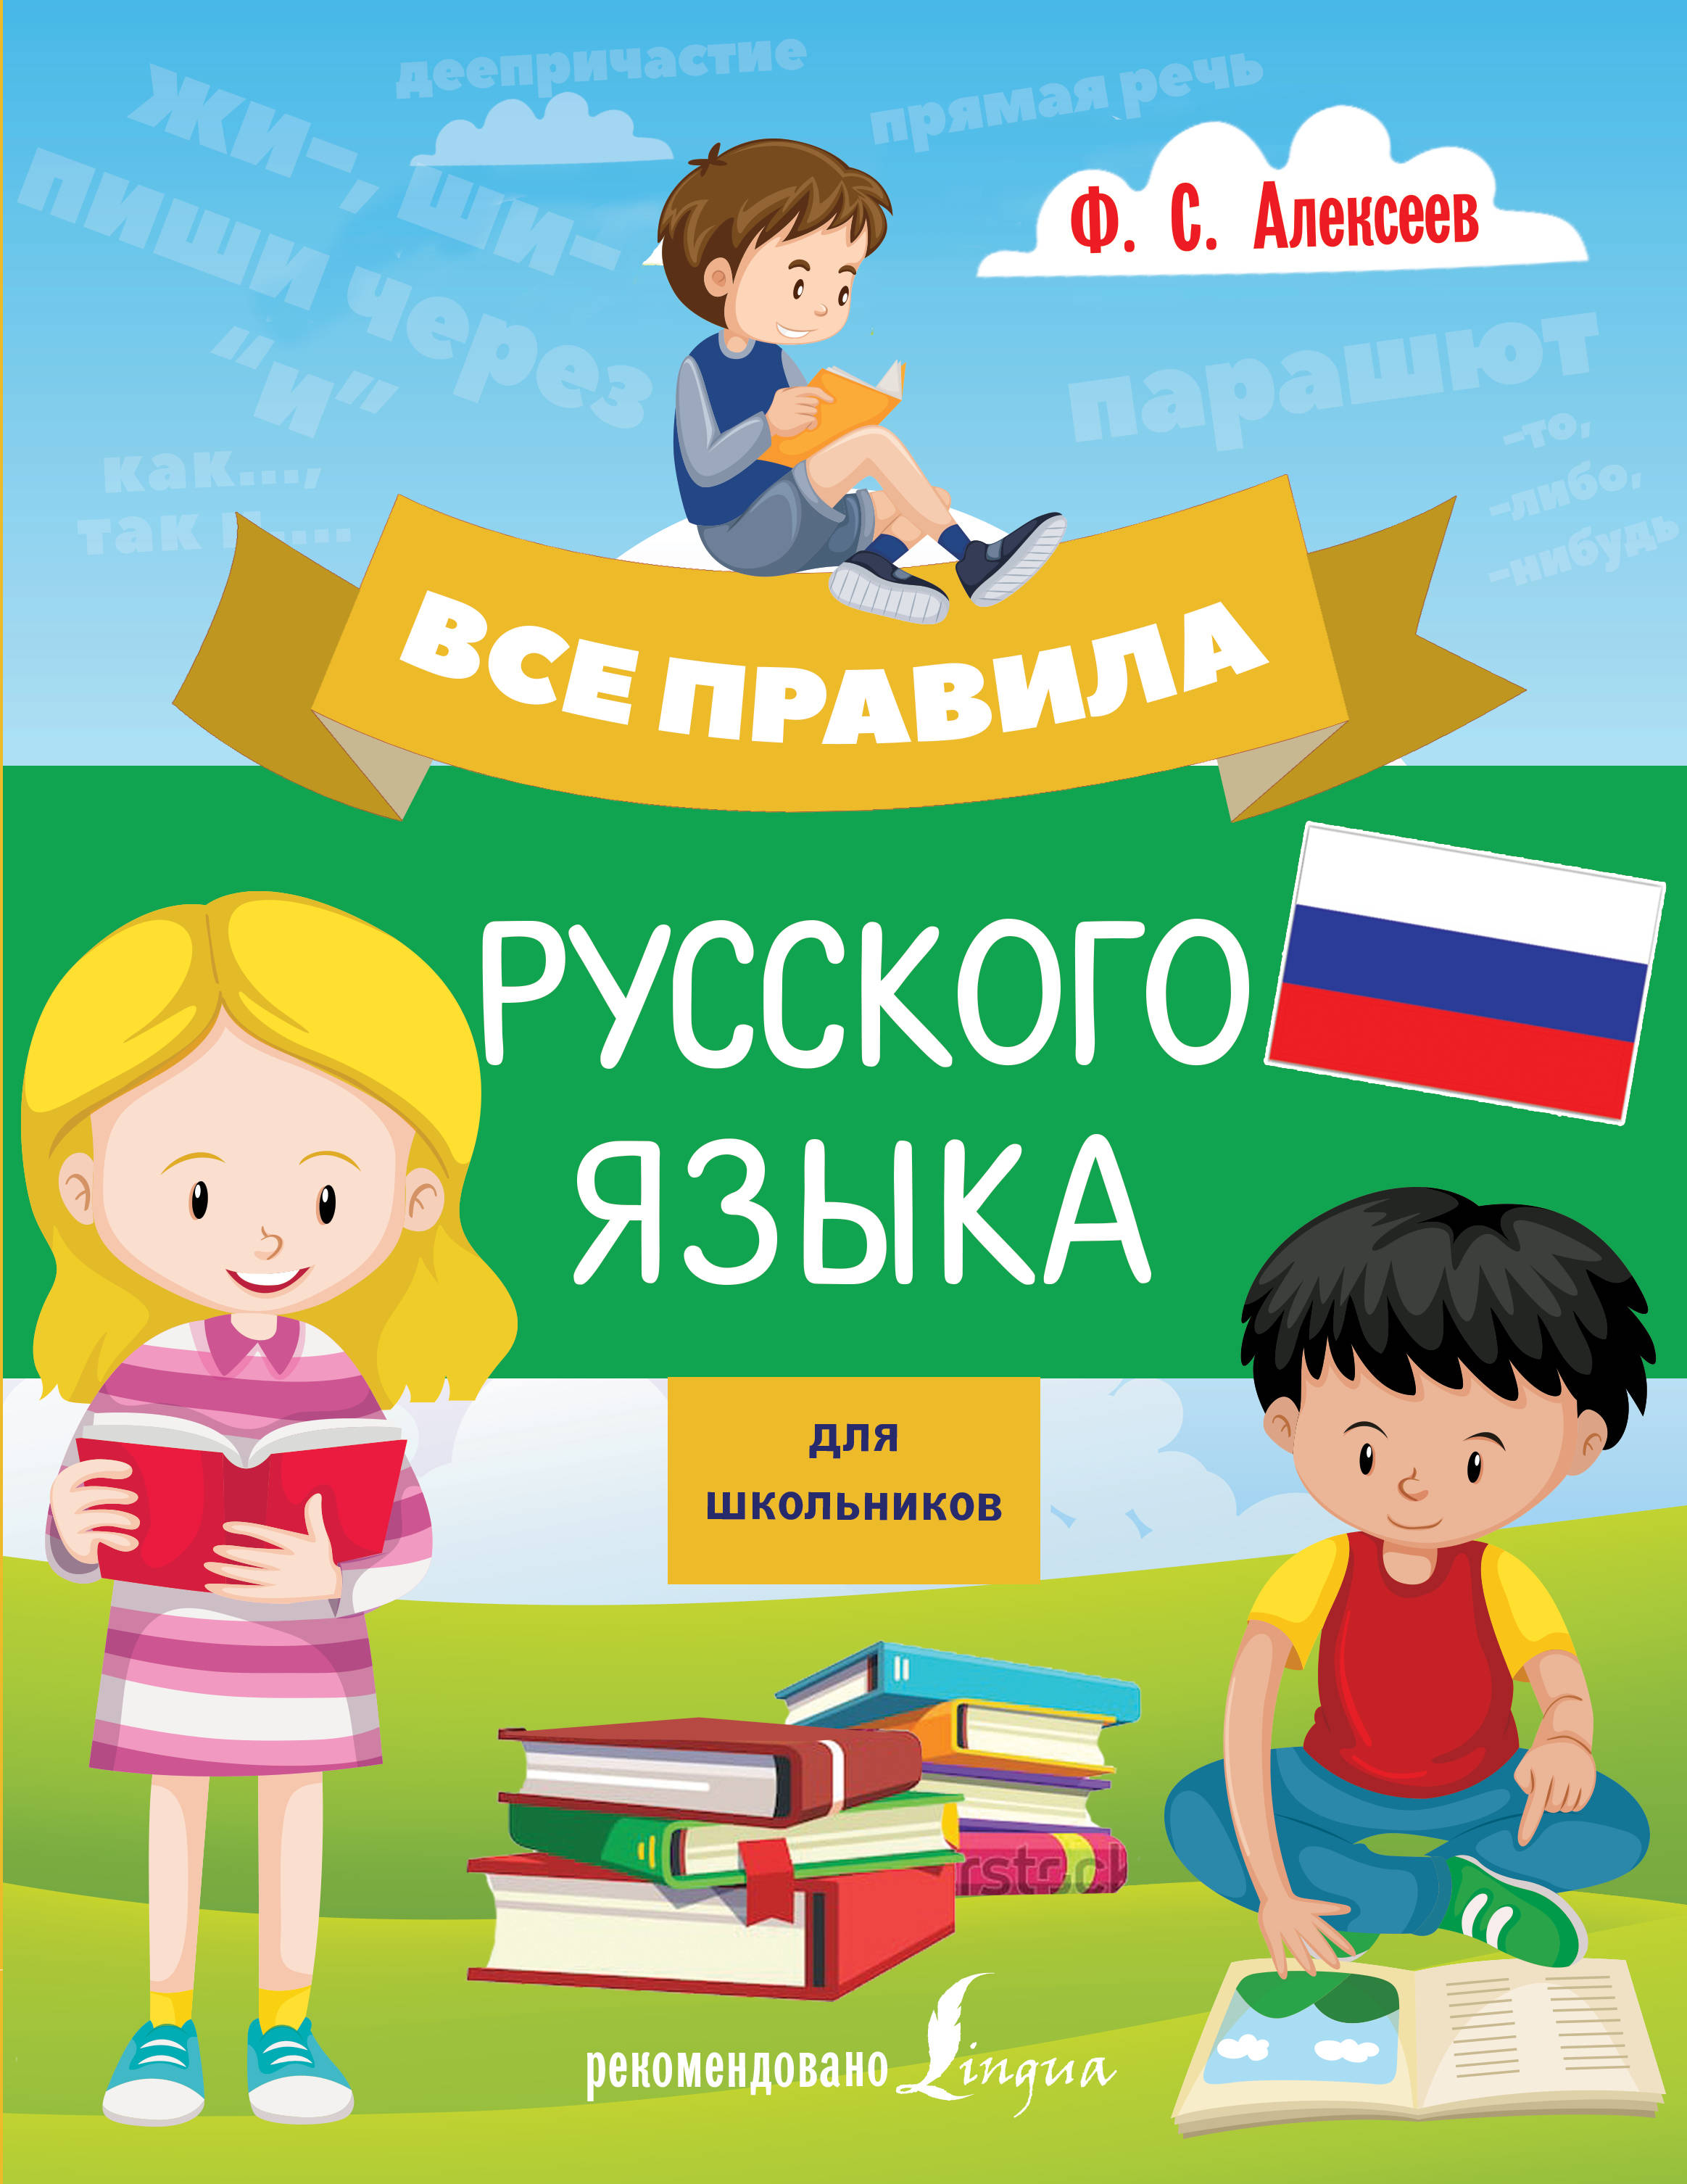 Начинаем изучать русский язык. Изучение русского языка. Изучать русский язык. Учить русский язык. Русский язык для детей.